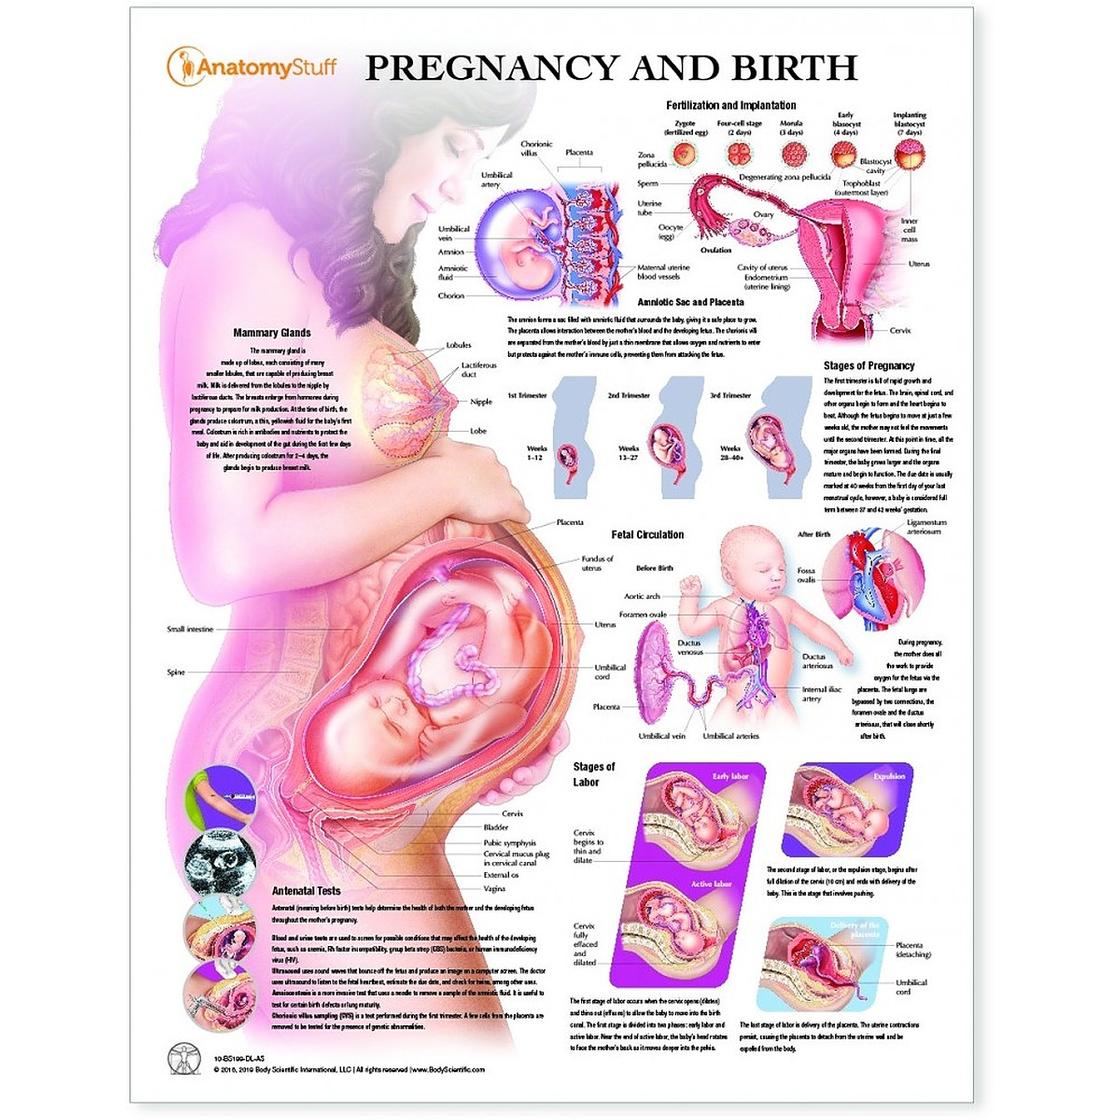 34 недели беременности какой. Положение ребенка в животе на 33 неделе беременности. Плод в животе матери схема. Положение органов на 32 неделе беременности. Эмбрион 34 недели беременности вес плода.